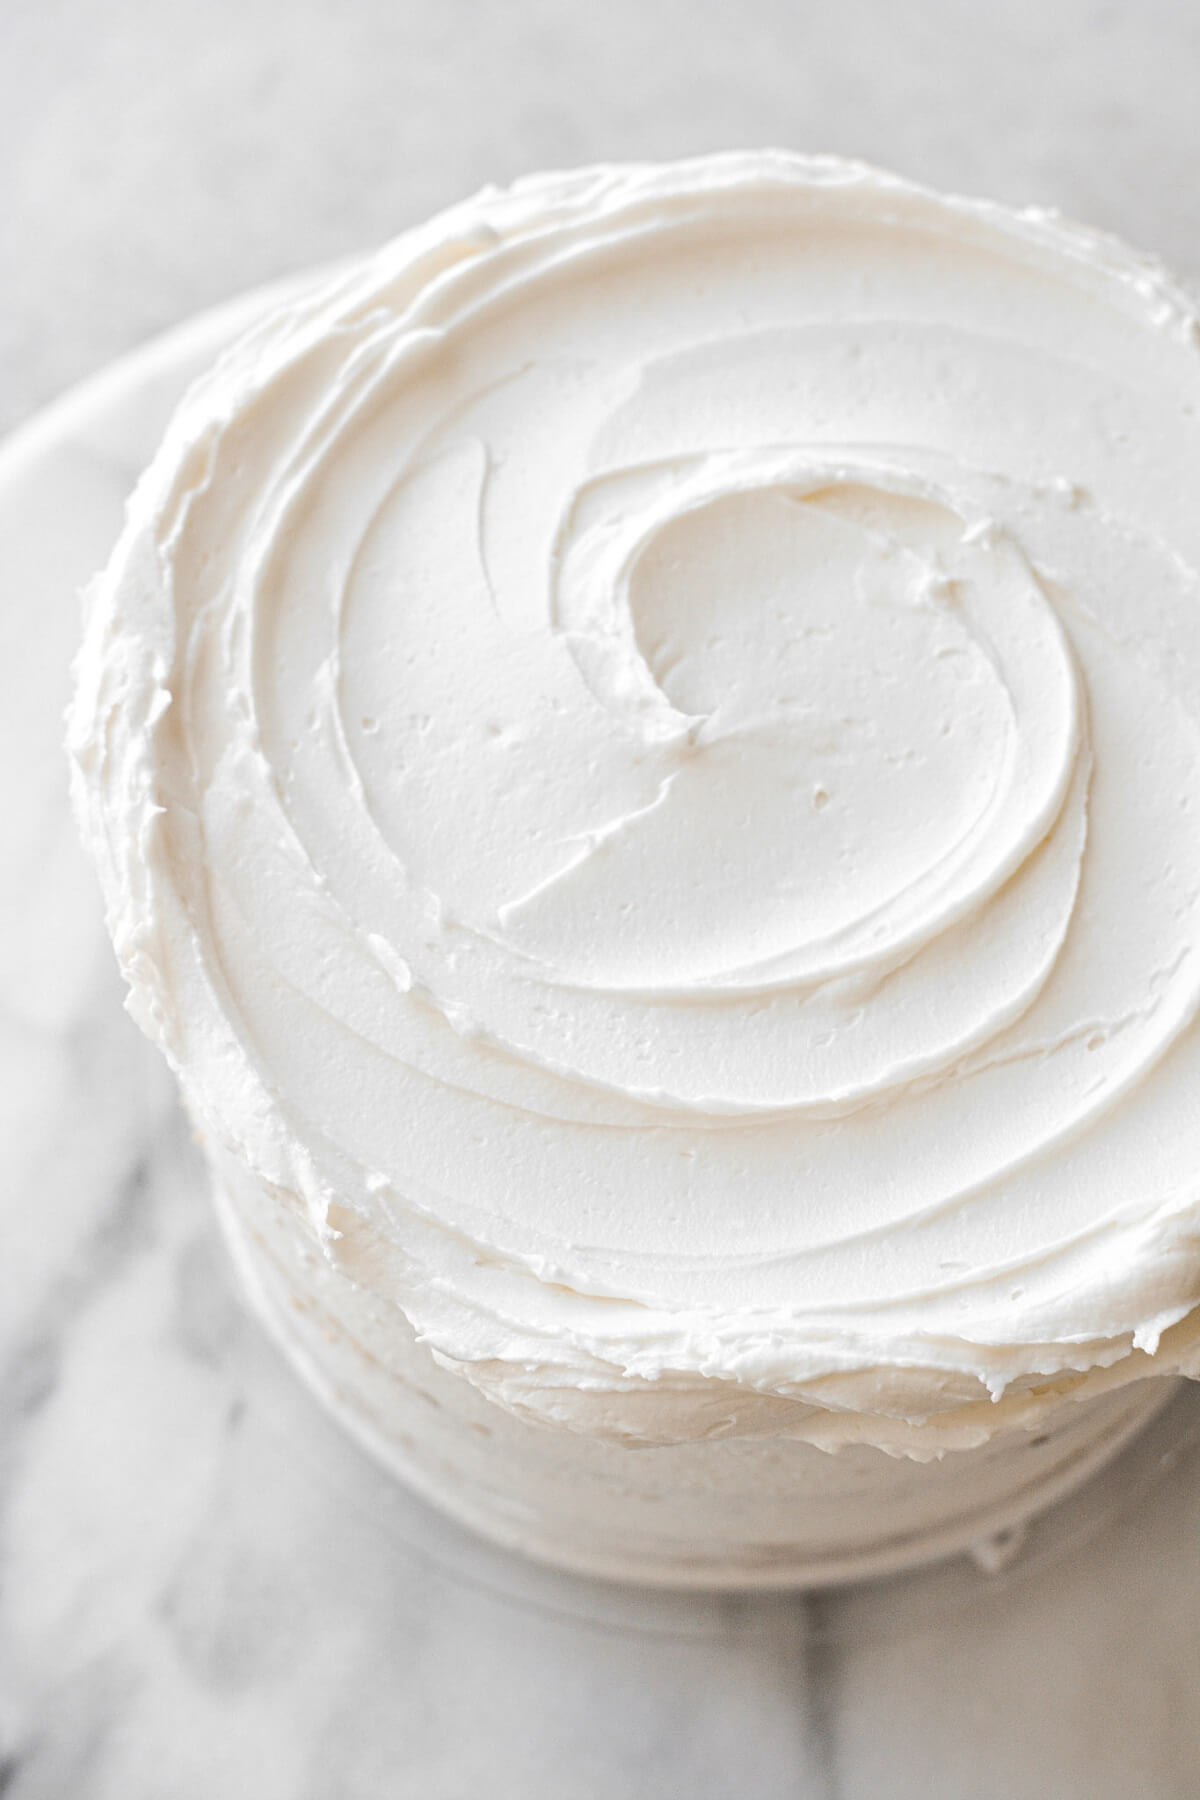 Vanilla buttercream on a cake.